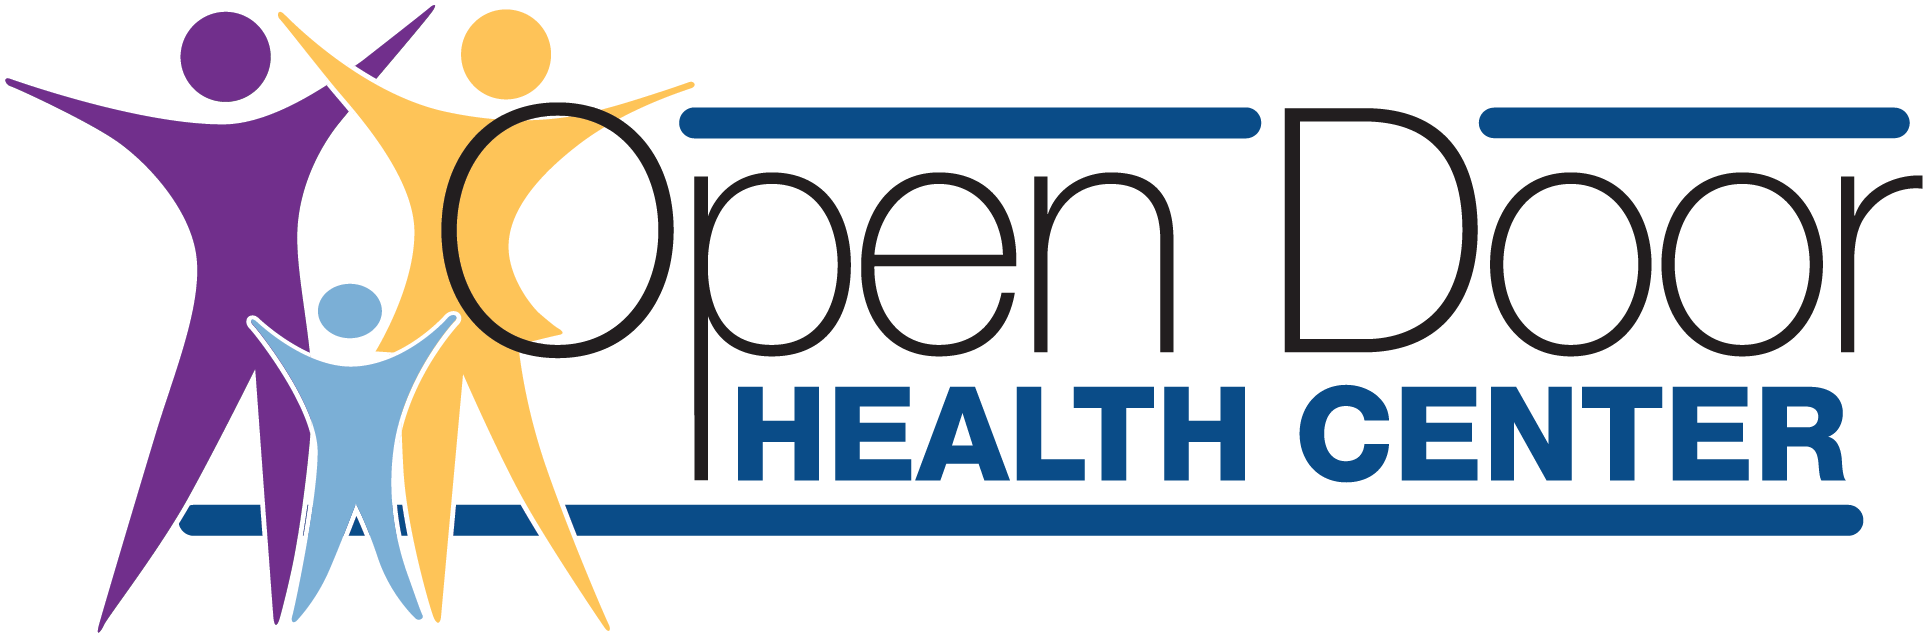 Behavioral Health Open Door Health Center